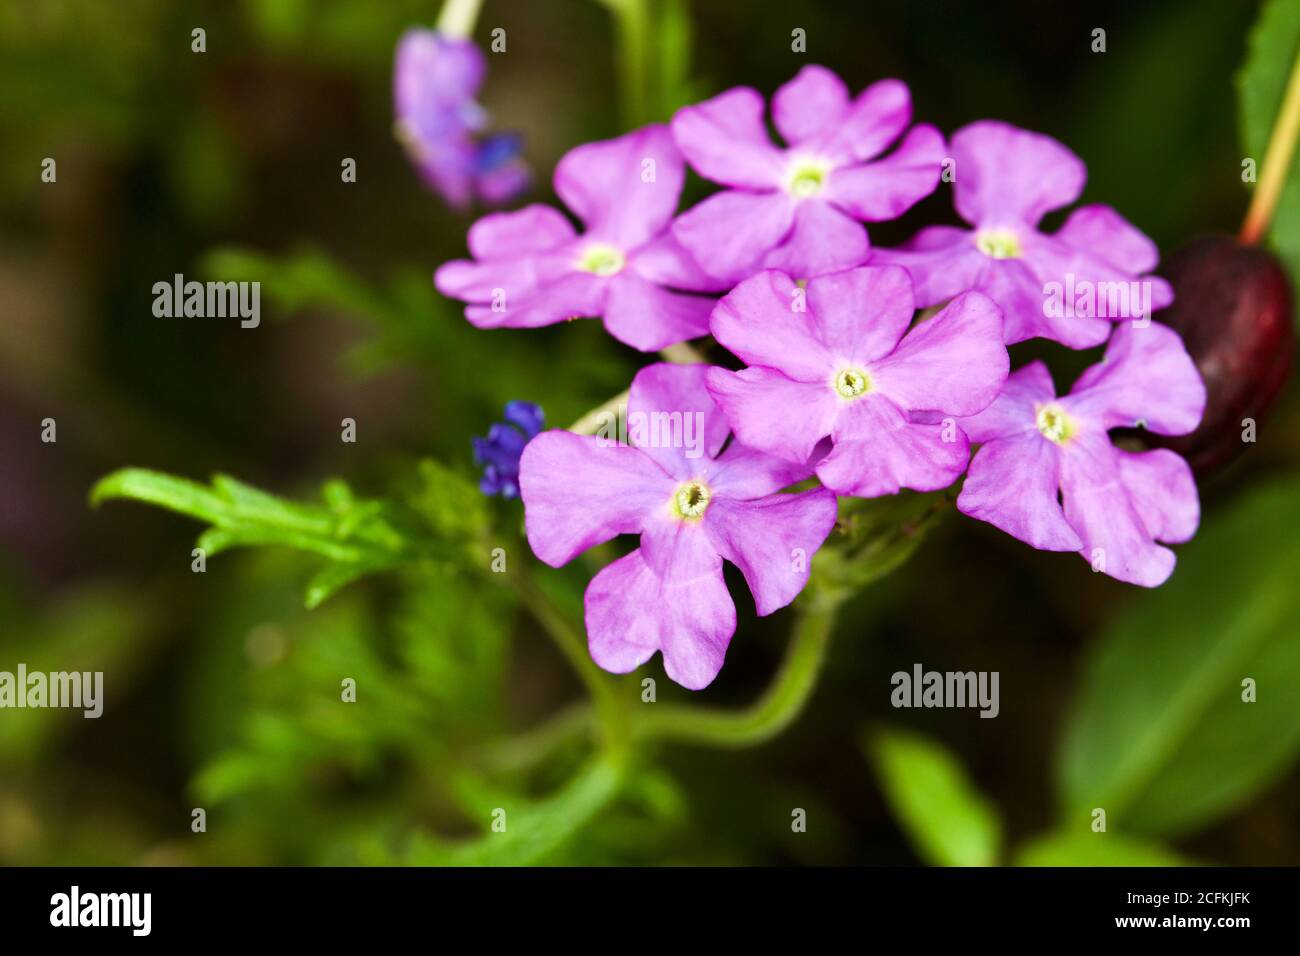 Beautiful lilac Verbena Stock Photo